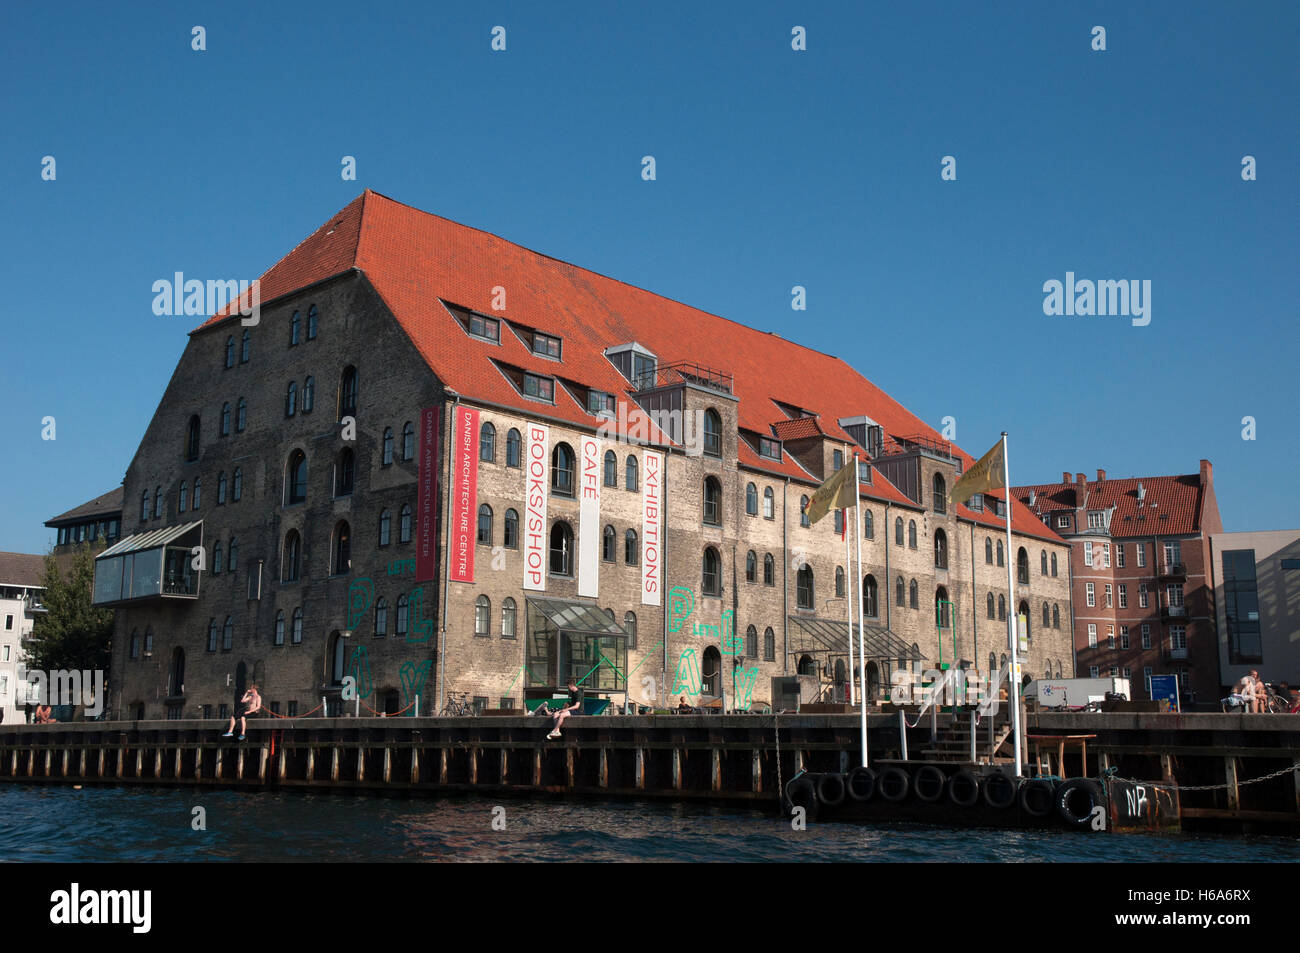 Gammel Dok, dänische Architektur Zentrum Kopenhagen Stockfoto